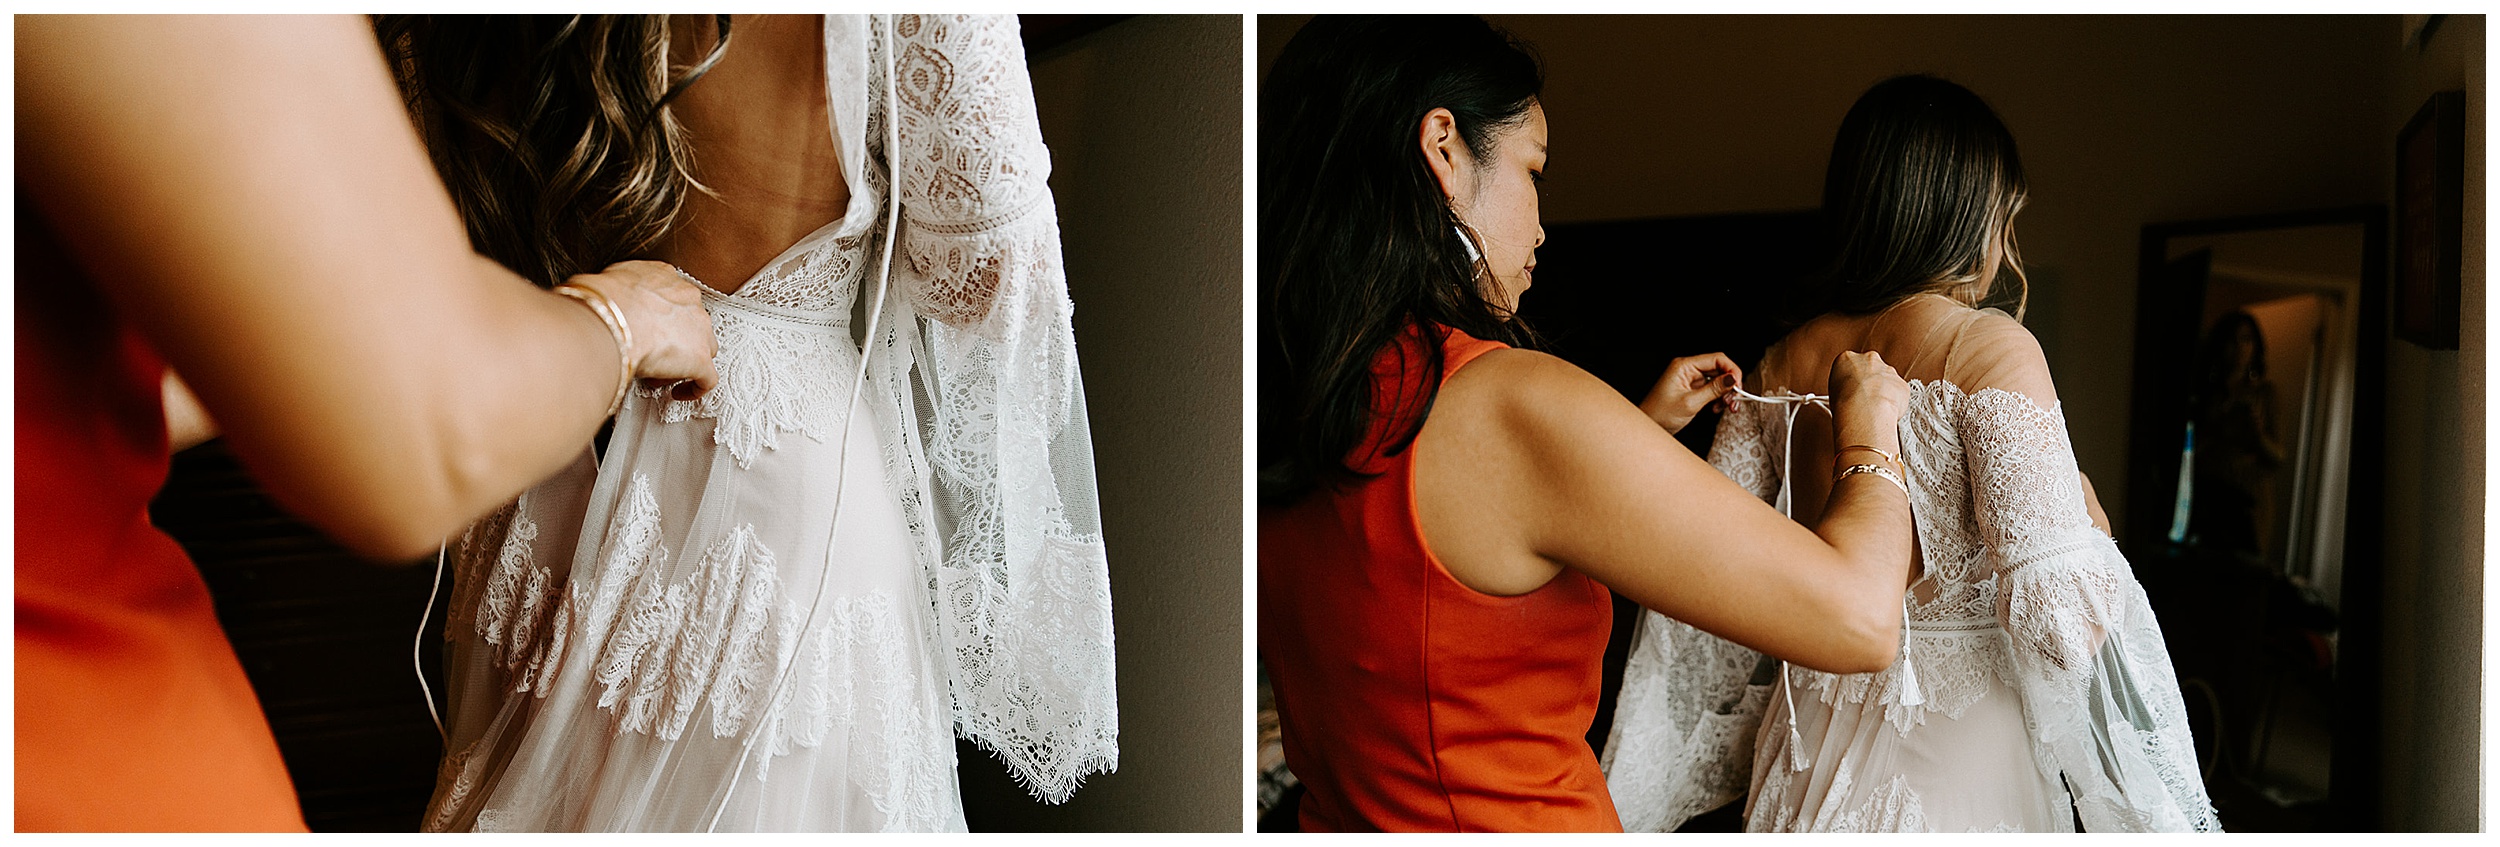 friend zipping up bride's wedding dress